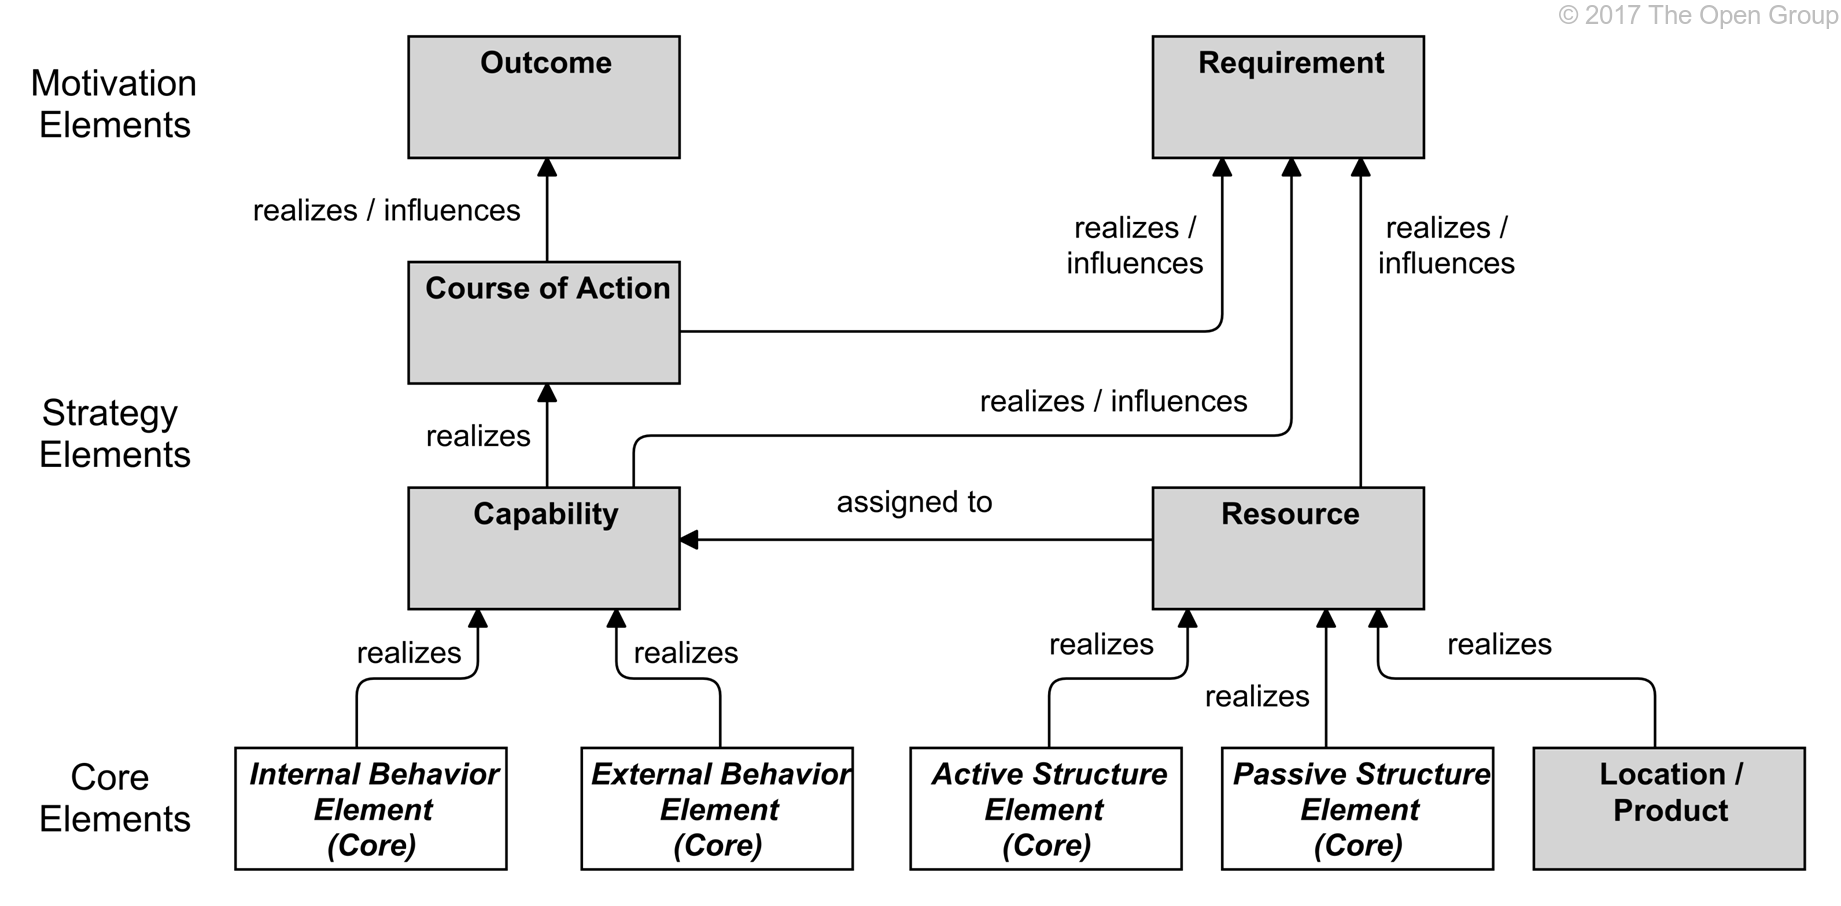 ArchiMate-en-condense-relations-entre-les-elements-de-strategie-et-la-motivation-et-les-elements-fondamentaux.png